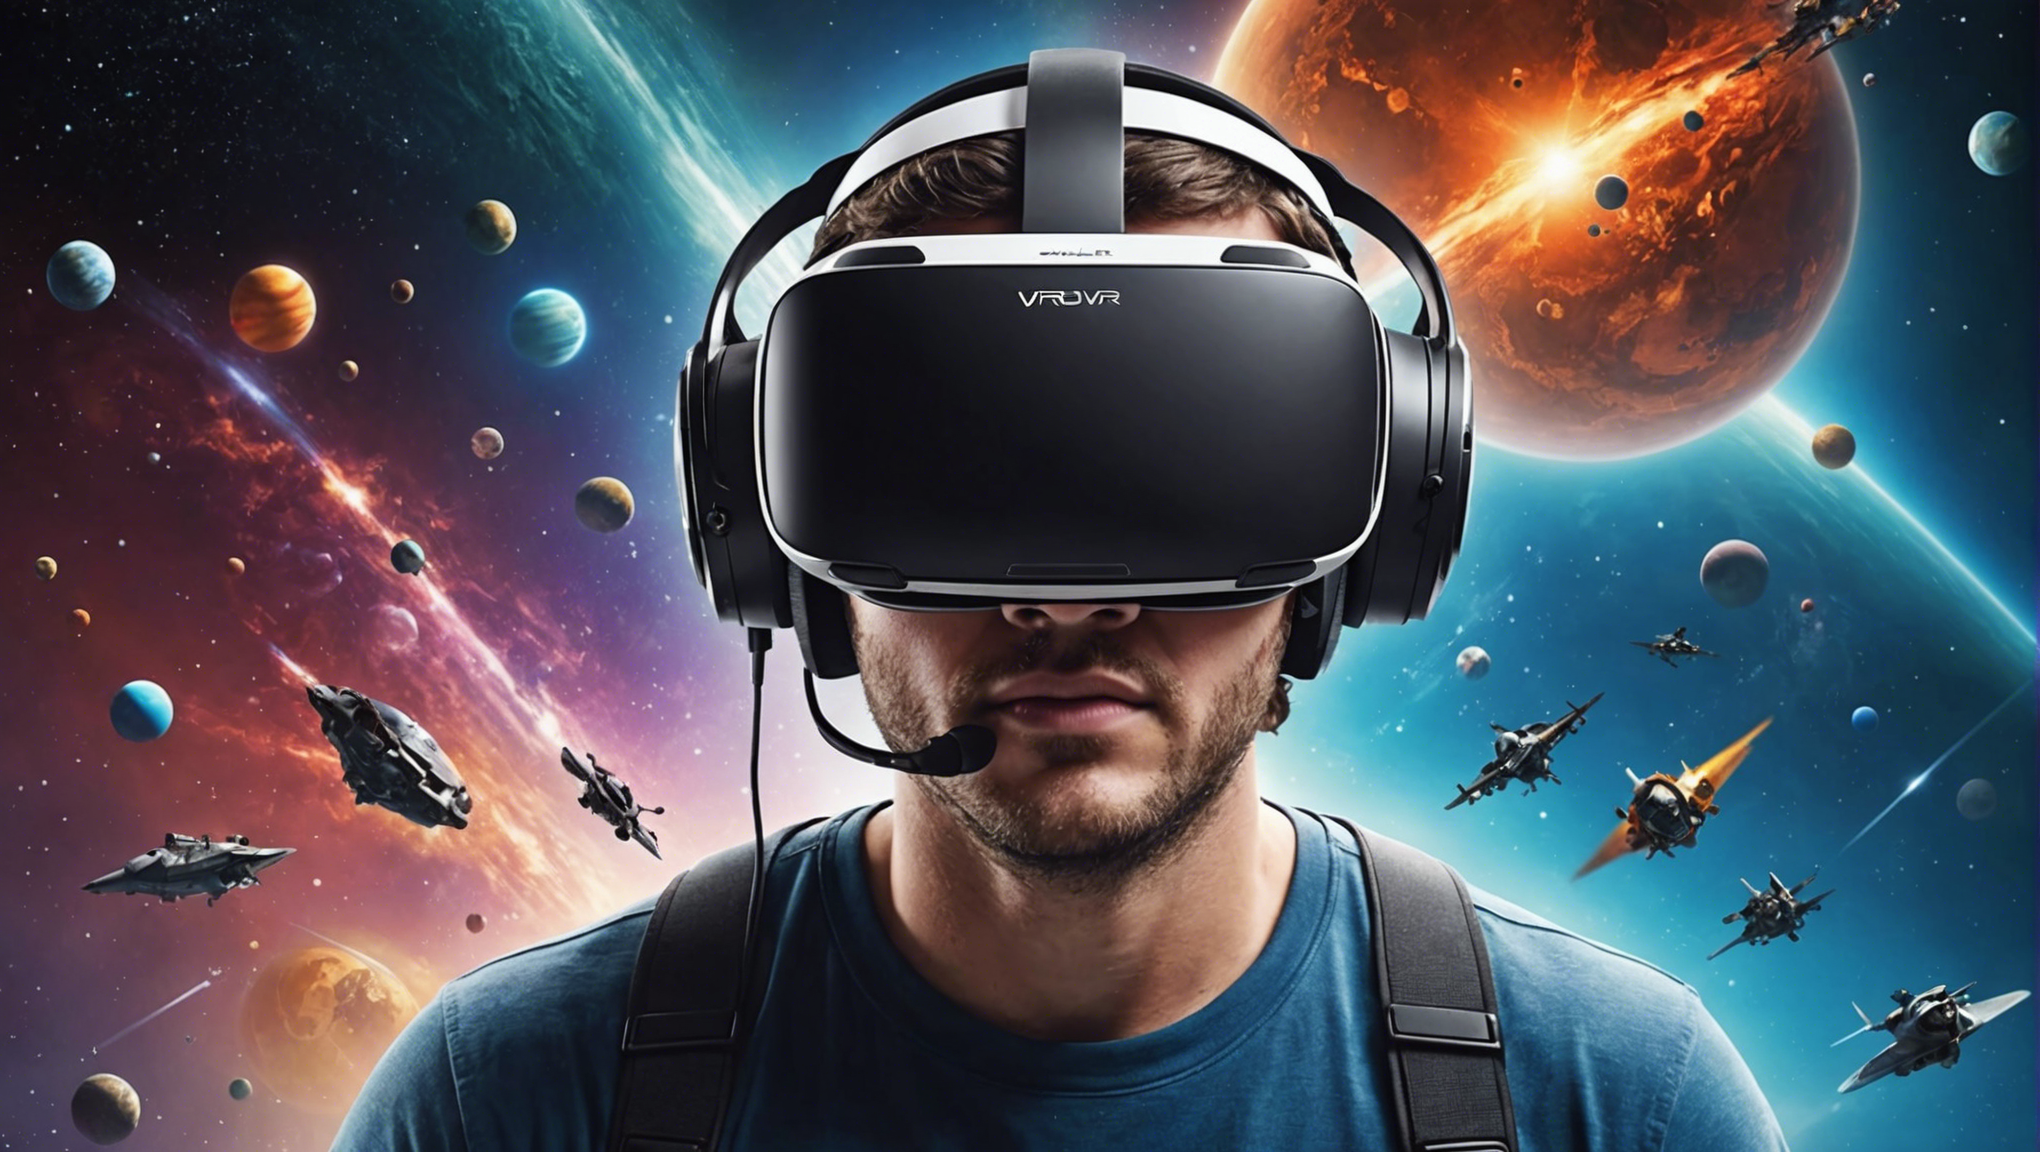 découvrez le casque vr et plongez dans un univers virtuel réaliste avec une immersion totale dans des mondes fascinants.